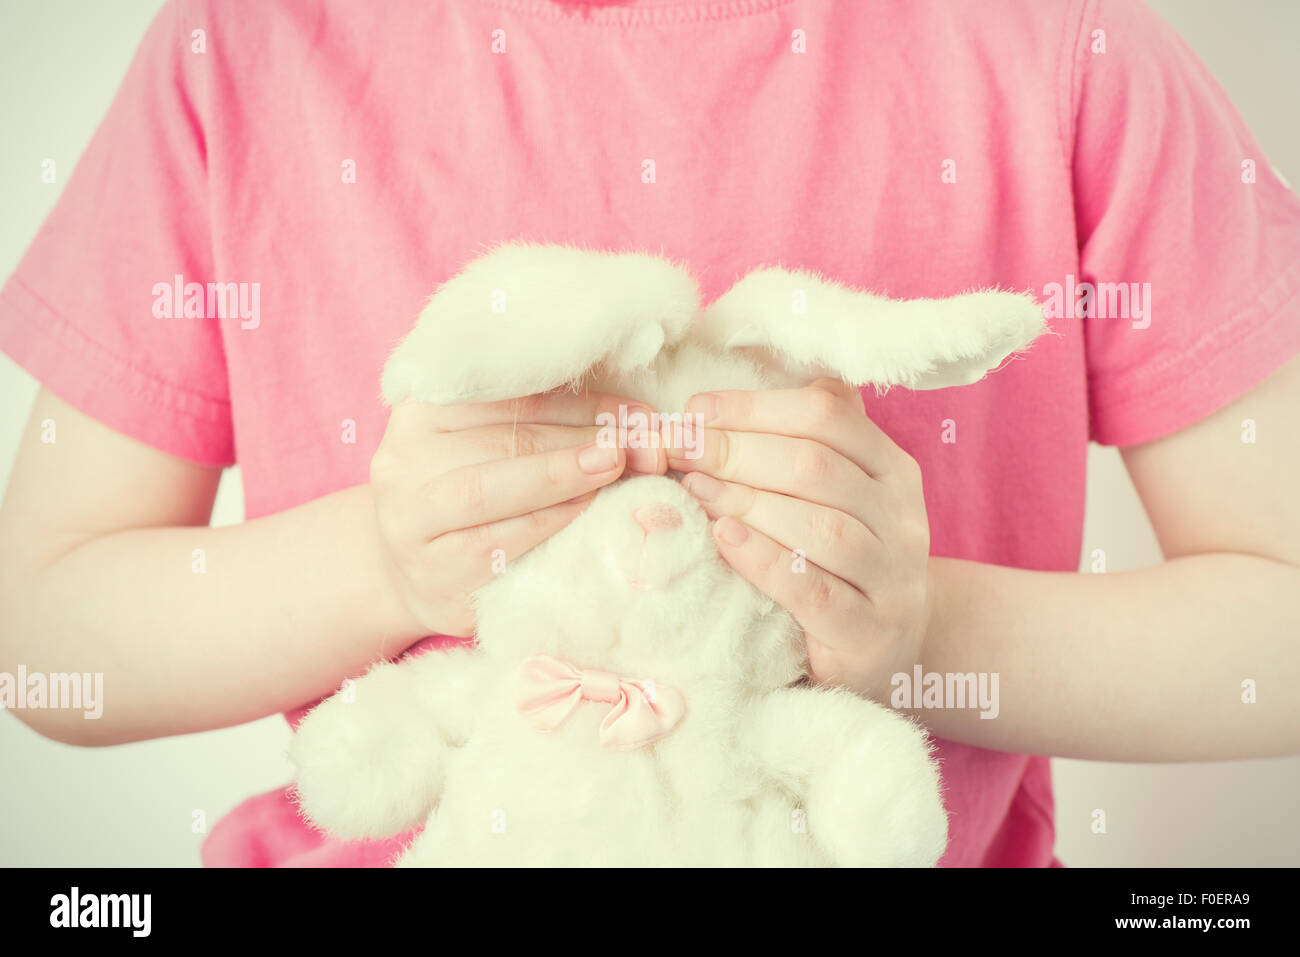 Little girl holding animal en peluche avec ses mains. Il est couvrant les yeux de la peluche lapin. Image conceptuelle de l'insécurité de la petite enfance, l'innocence et de la vulnérabilité. Banque D'Images